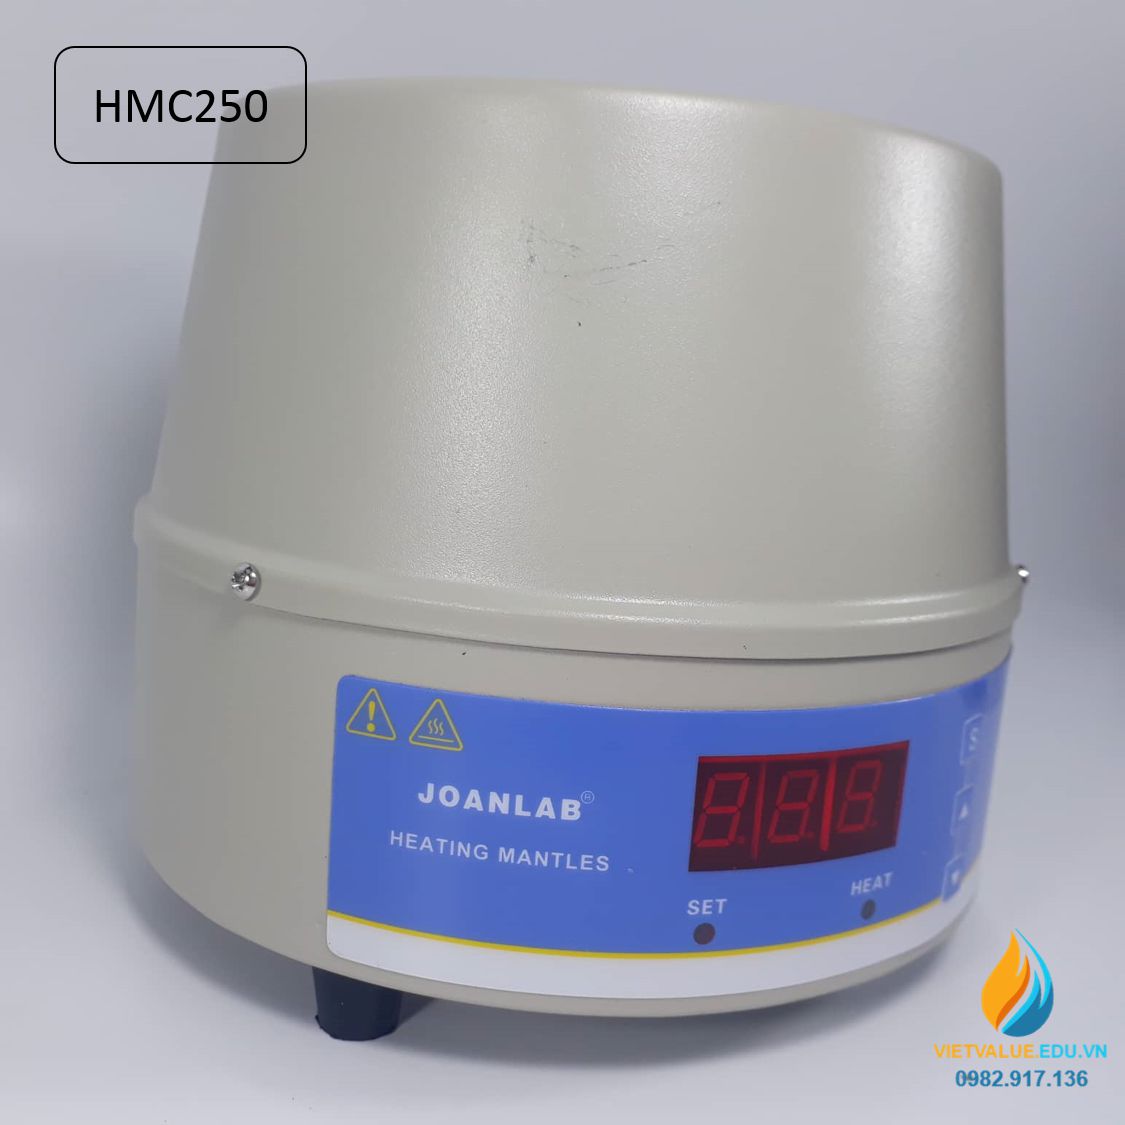 Máy ủ nhiệt điều chỉnh màn hình kỹ thuật số Joan Lab HMC250, dung tích 250ml